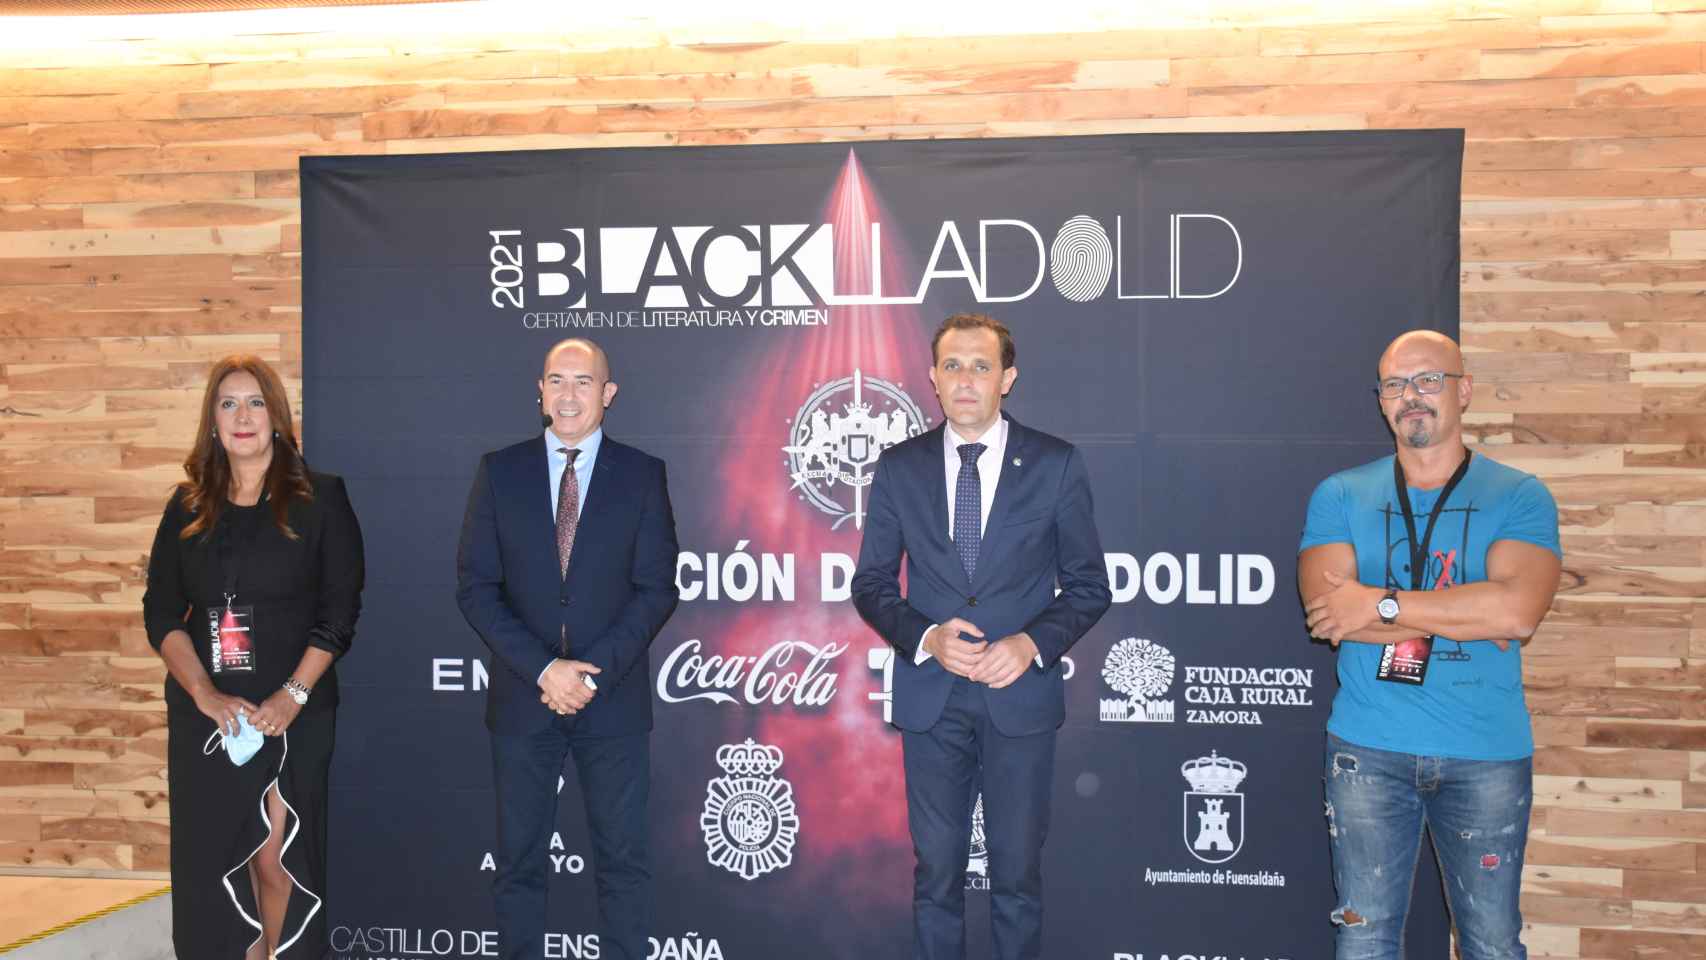 Dolores Redondo, Moisés Rodríguez, Conrado Íscar y César Pérez Gellida momentos antes de inaugurar 'Blacklladolid'